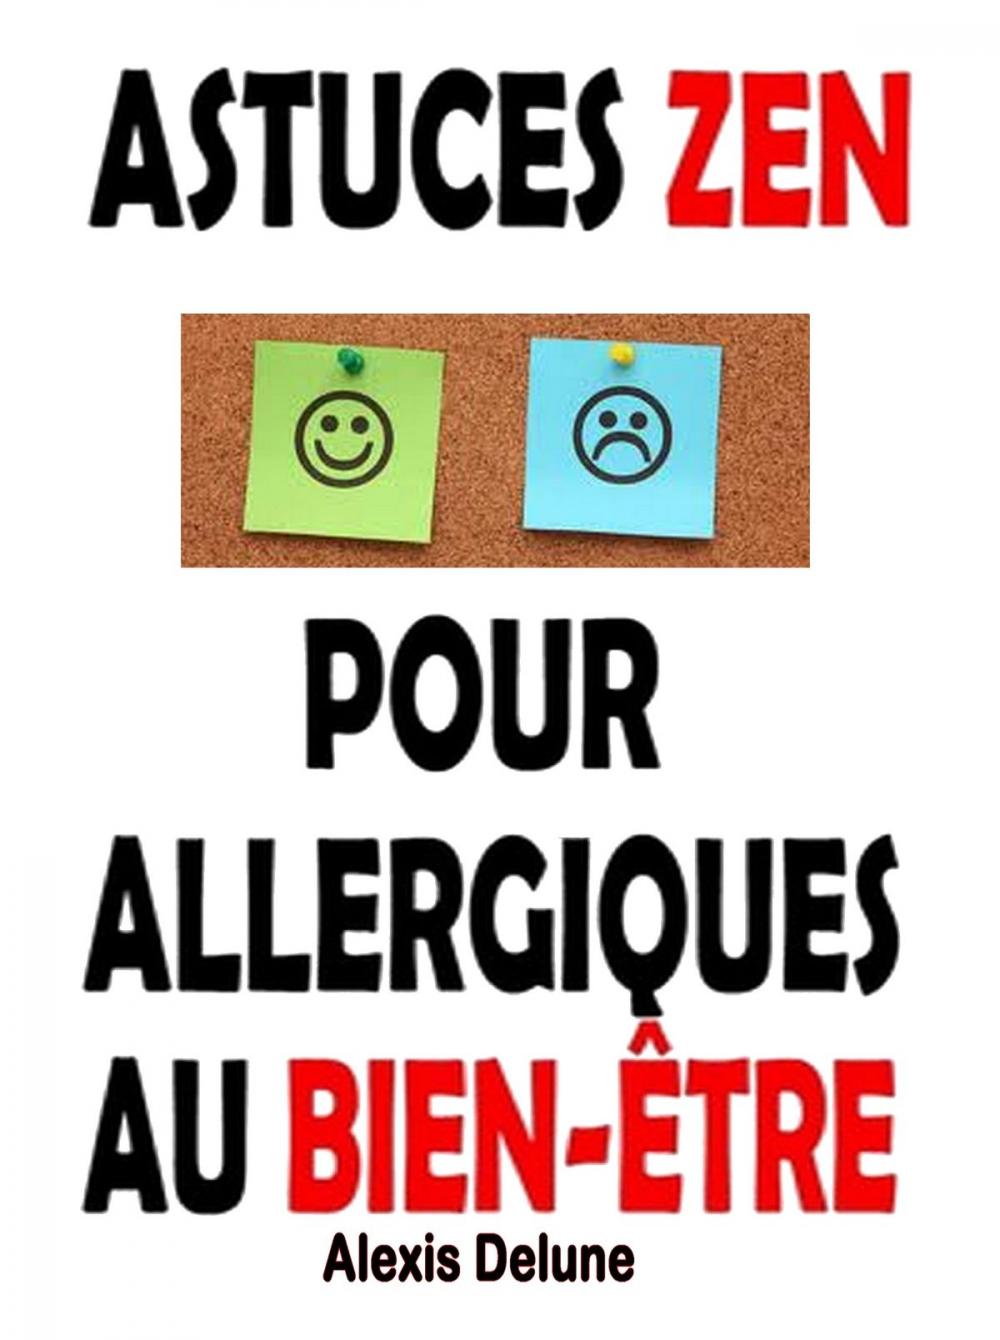 Big bigCover of Astuces Zen pour allergiques au bien-être